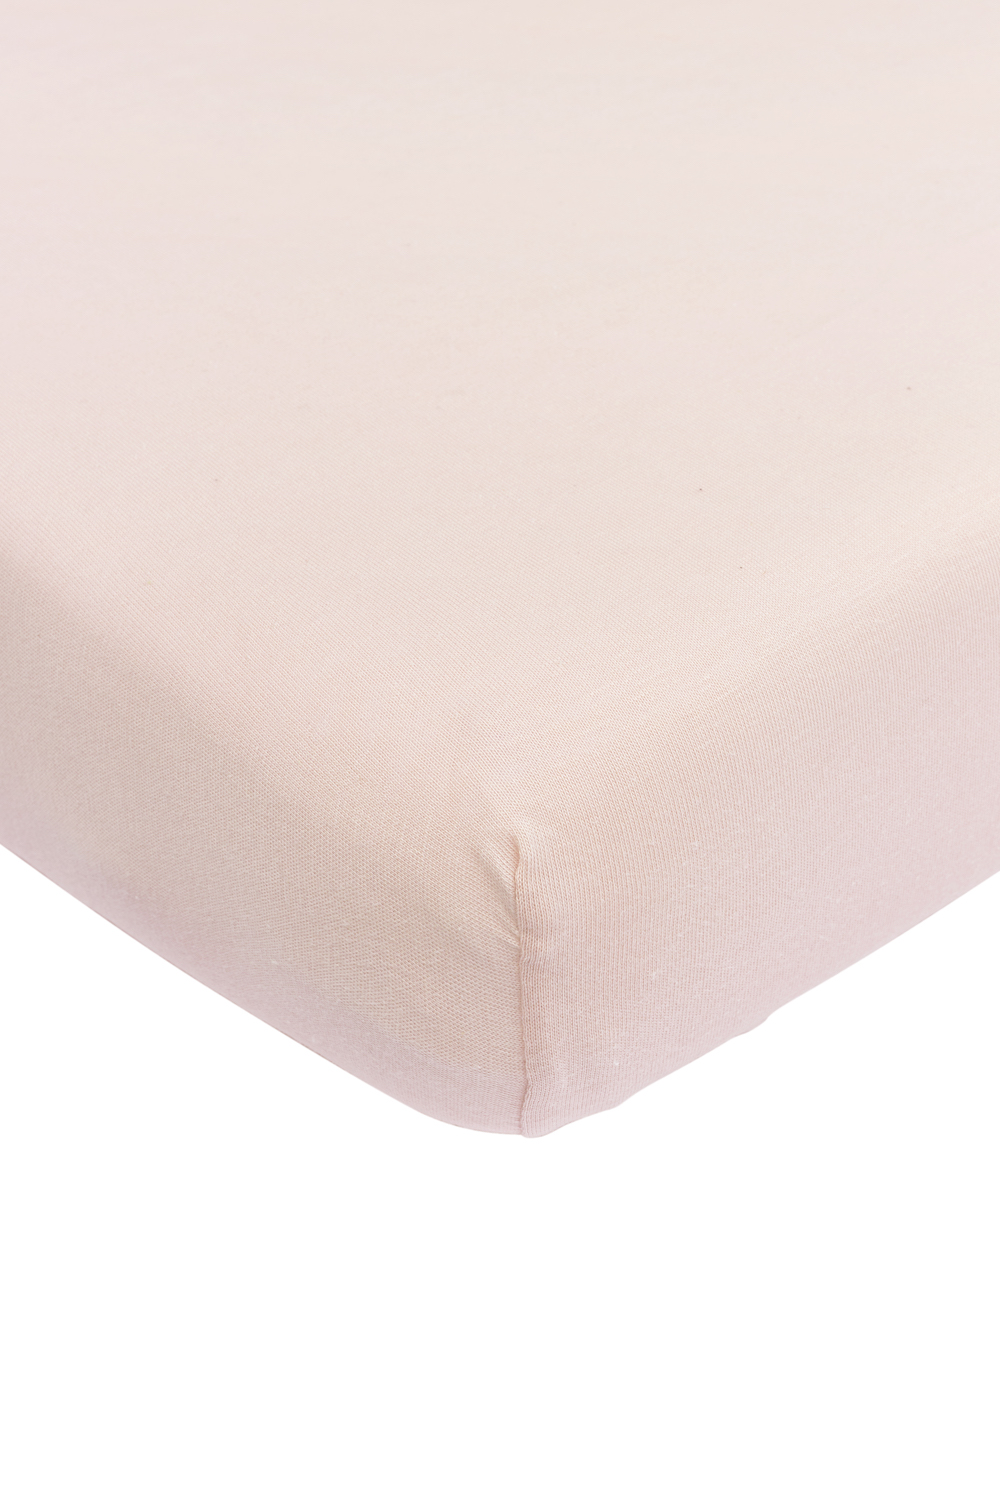 Fitted sheet playpen mattress Uni - soft pink - 75x95cm